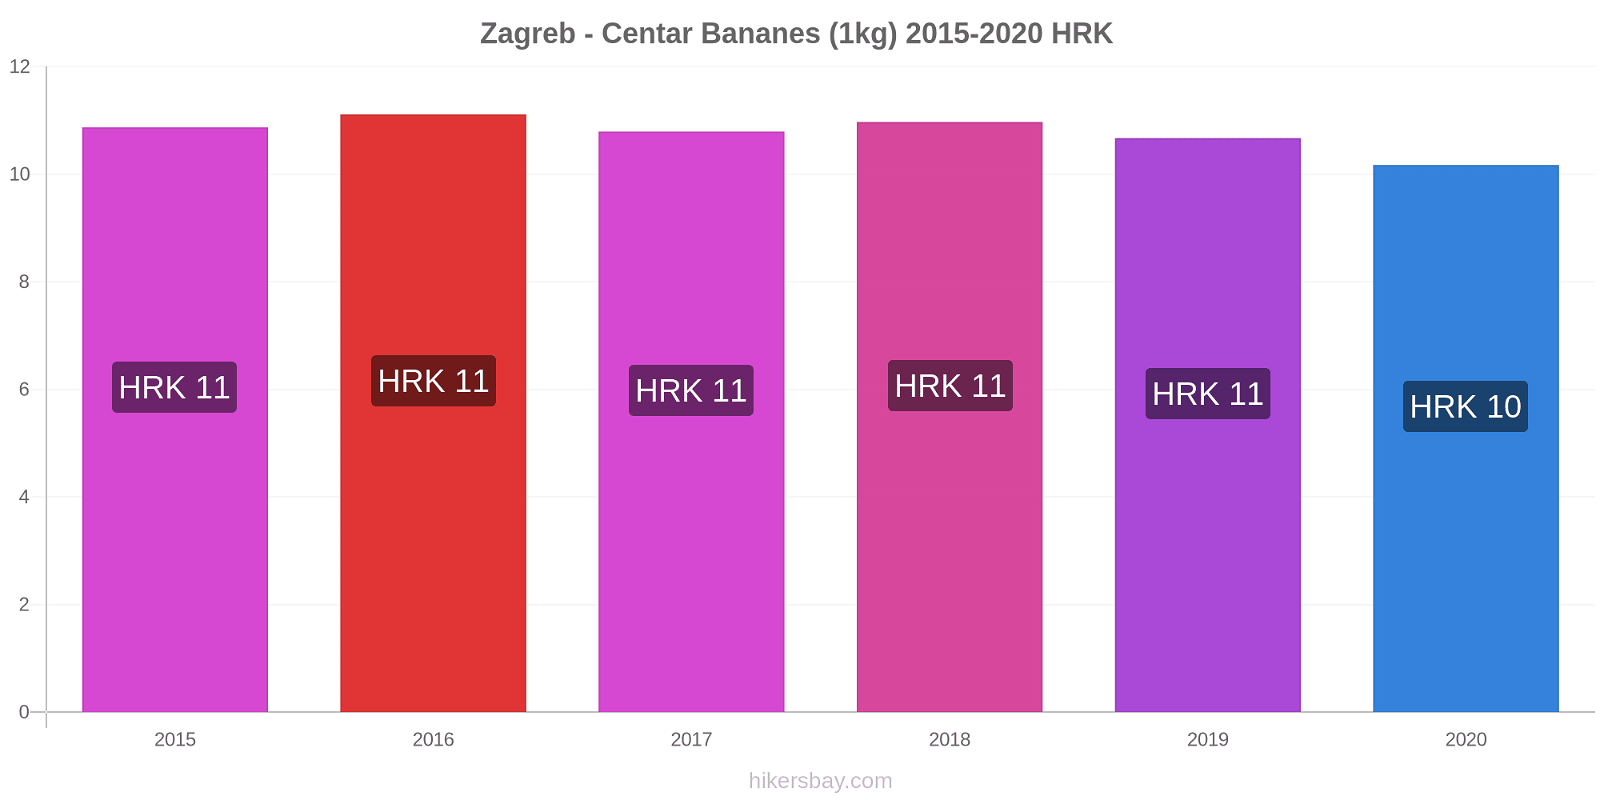 Zagreb - Centar changements de prix Bananes (1kg) hikersbay.com